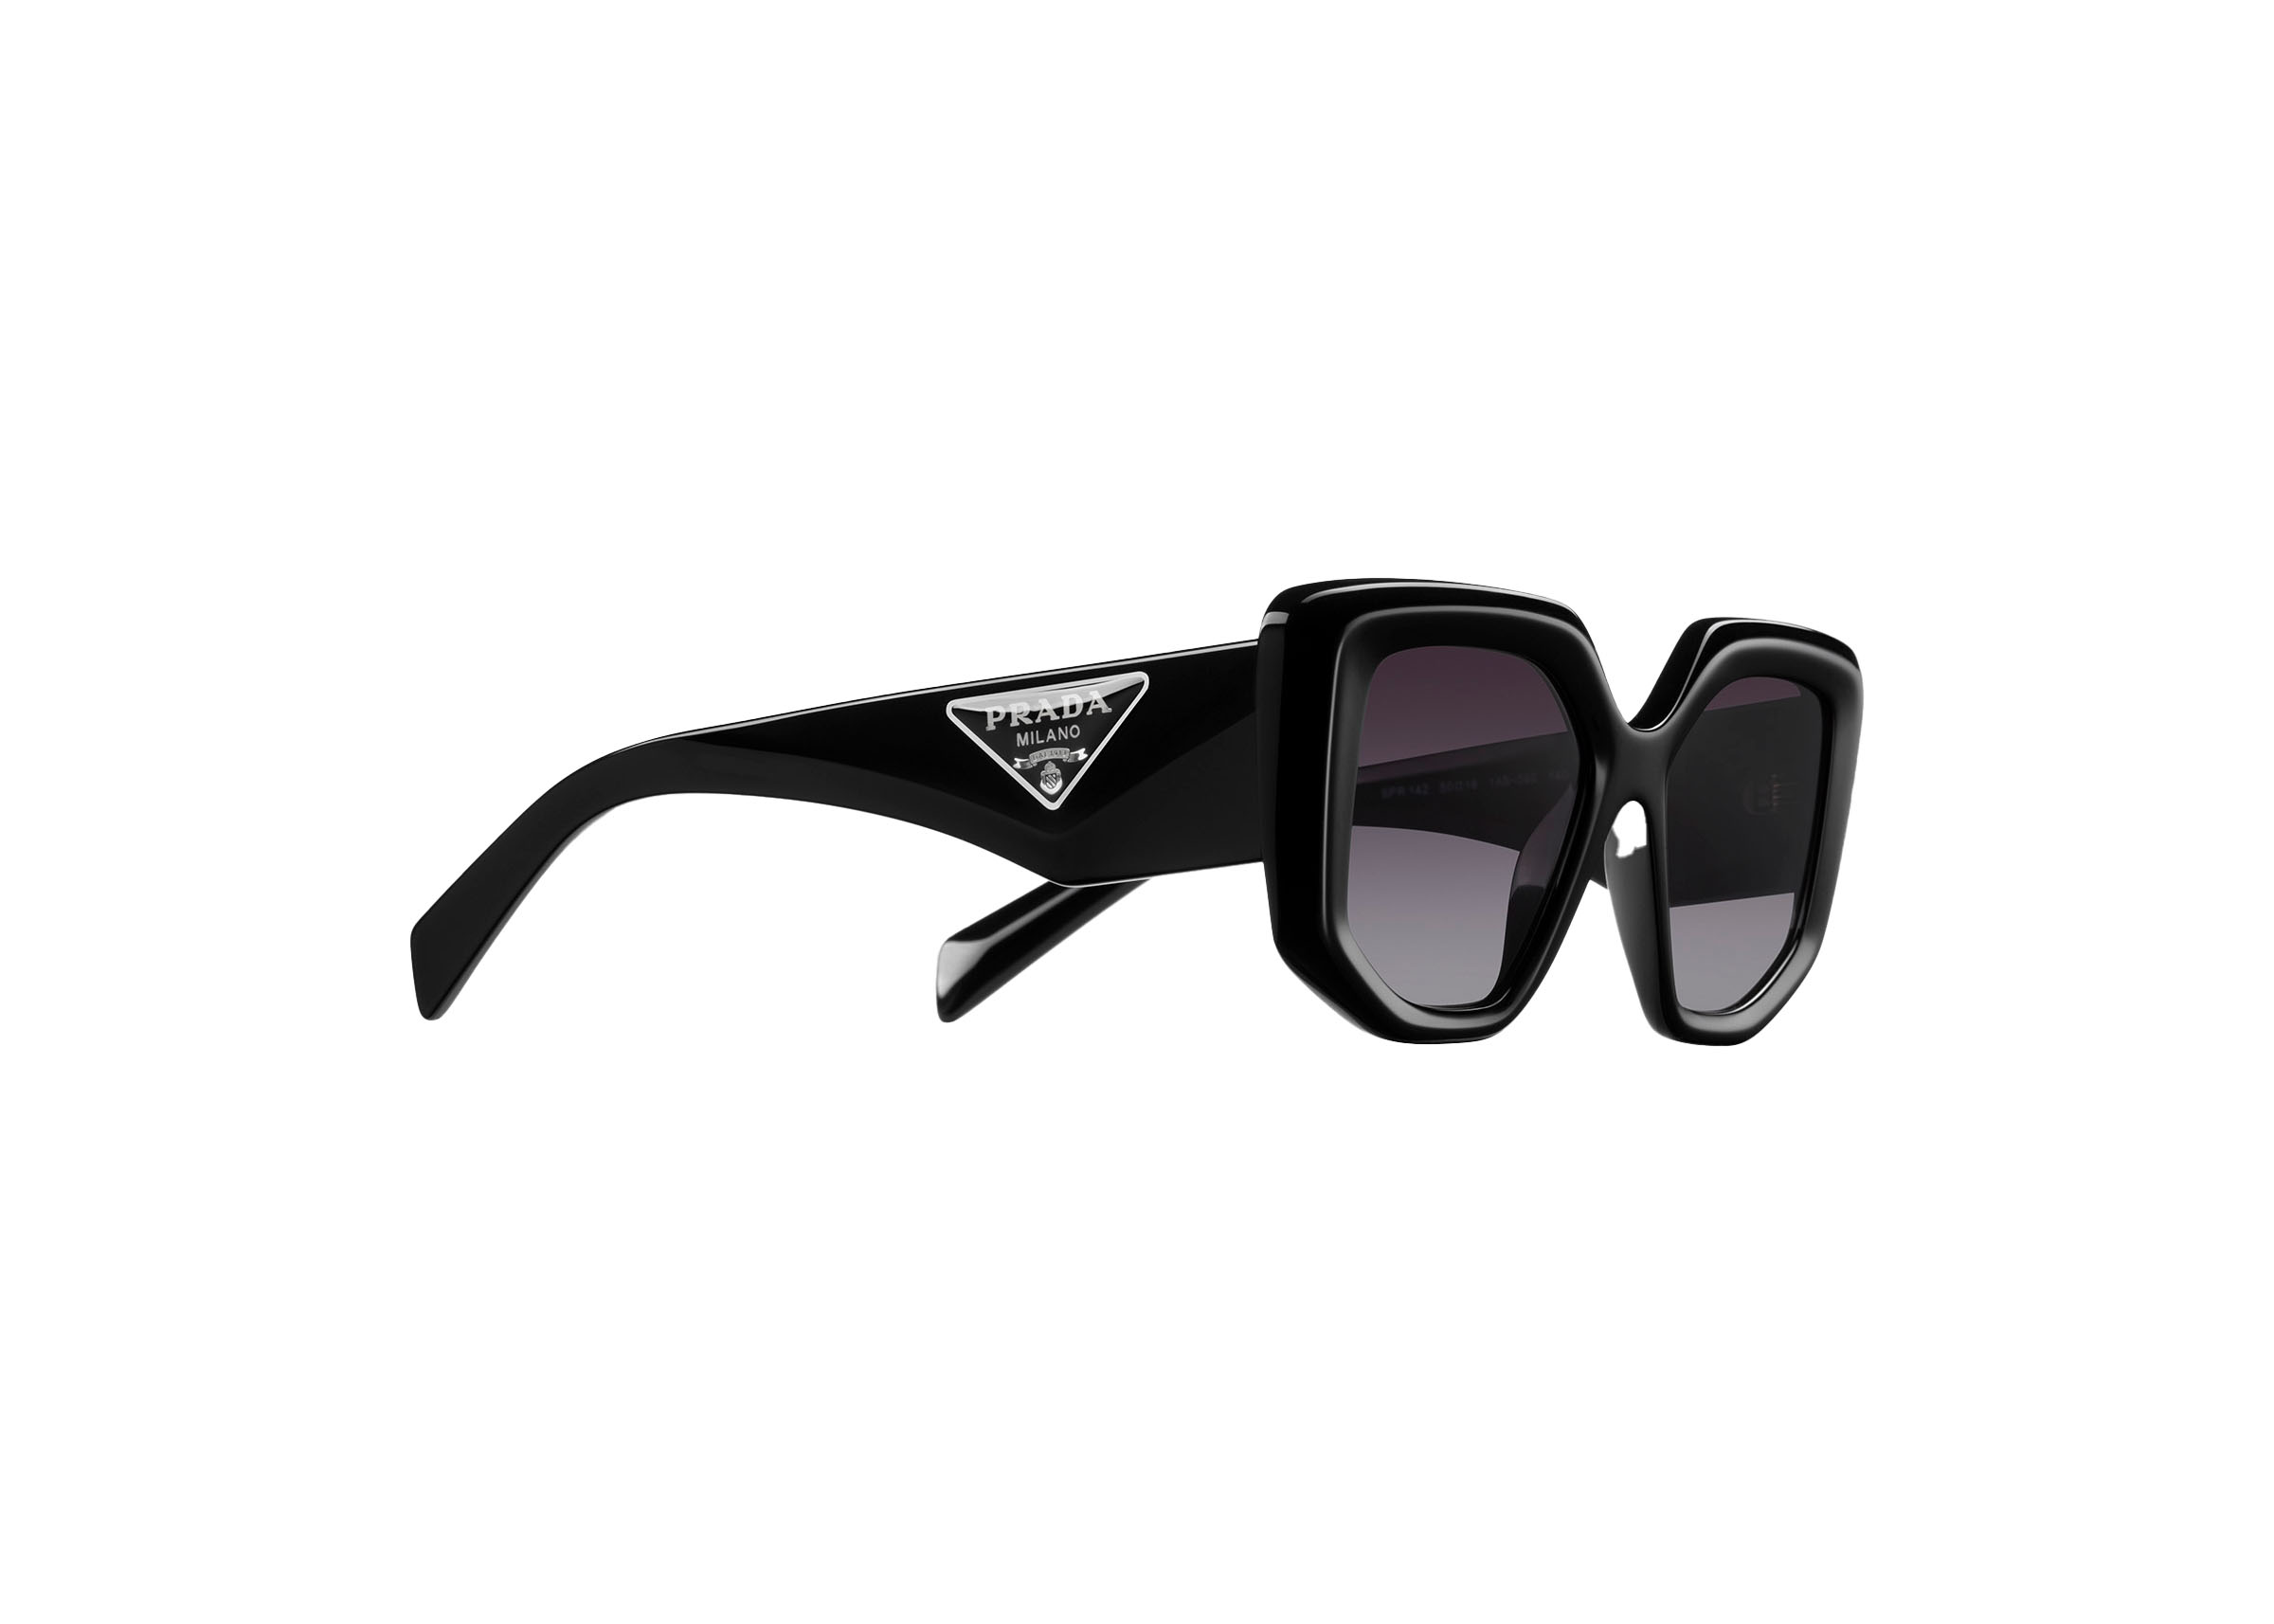 PRADA Spr 08o 2au-6s1 Havana Sunglasses Spr08o - 57mm for sale online | eBay